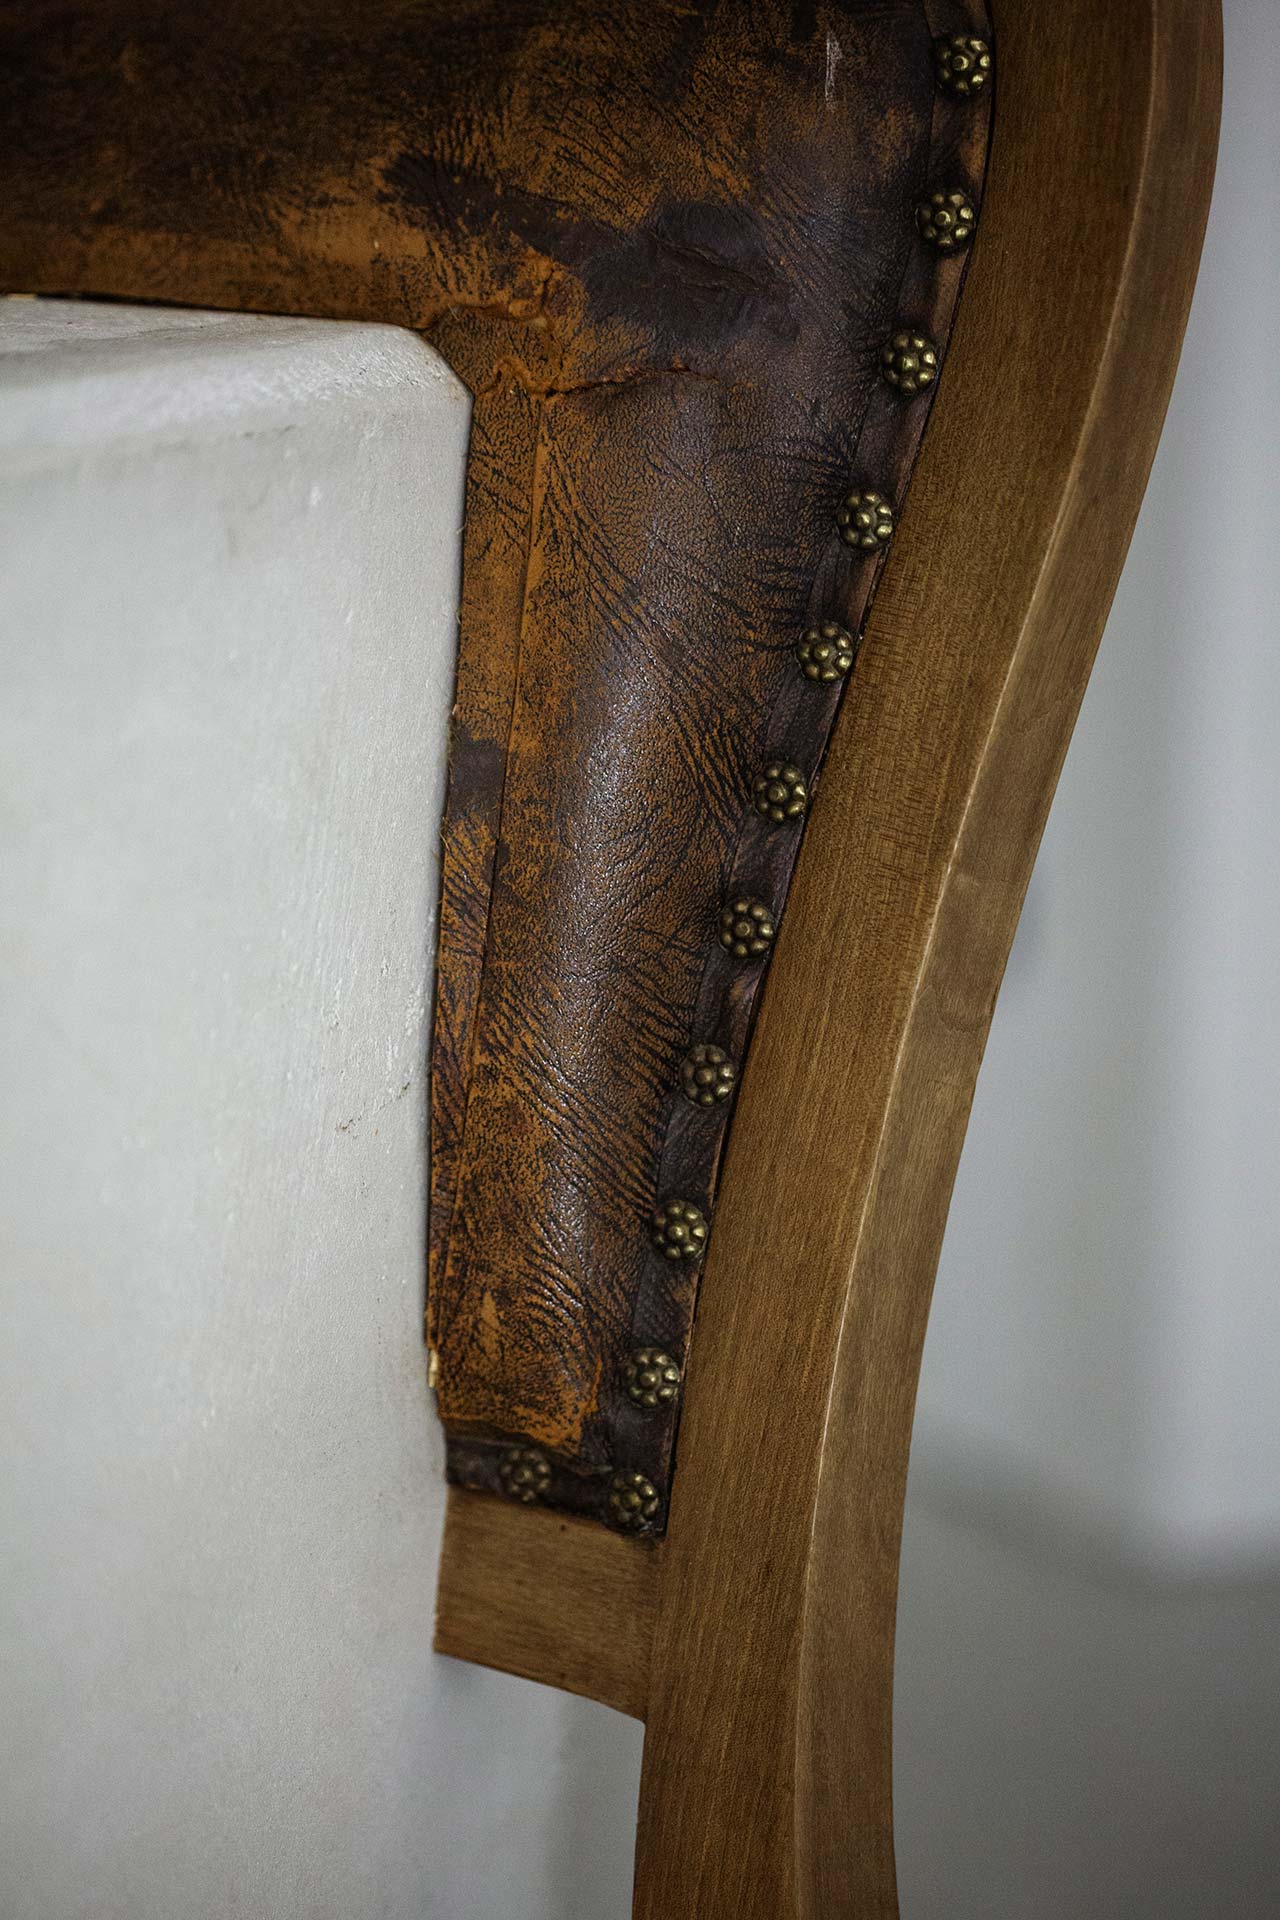 Nucleo (Piergiorgio Robino + Marzia Ricci), “Boolean” And (Chair), 2017. Concrete, vintage furniture, 61 x 49 x 95h cm. Unique piece in an edition 1+1. Photo by Studio Pepe Fotografia.